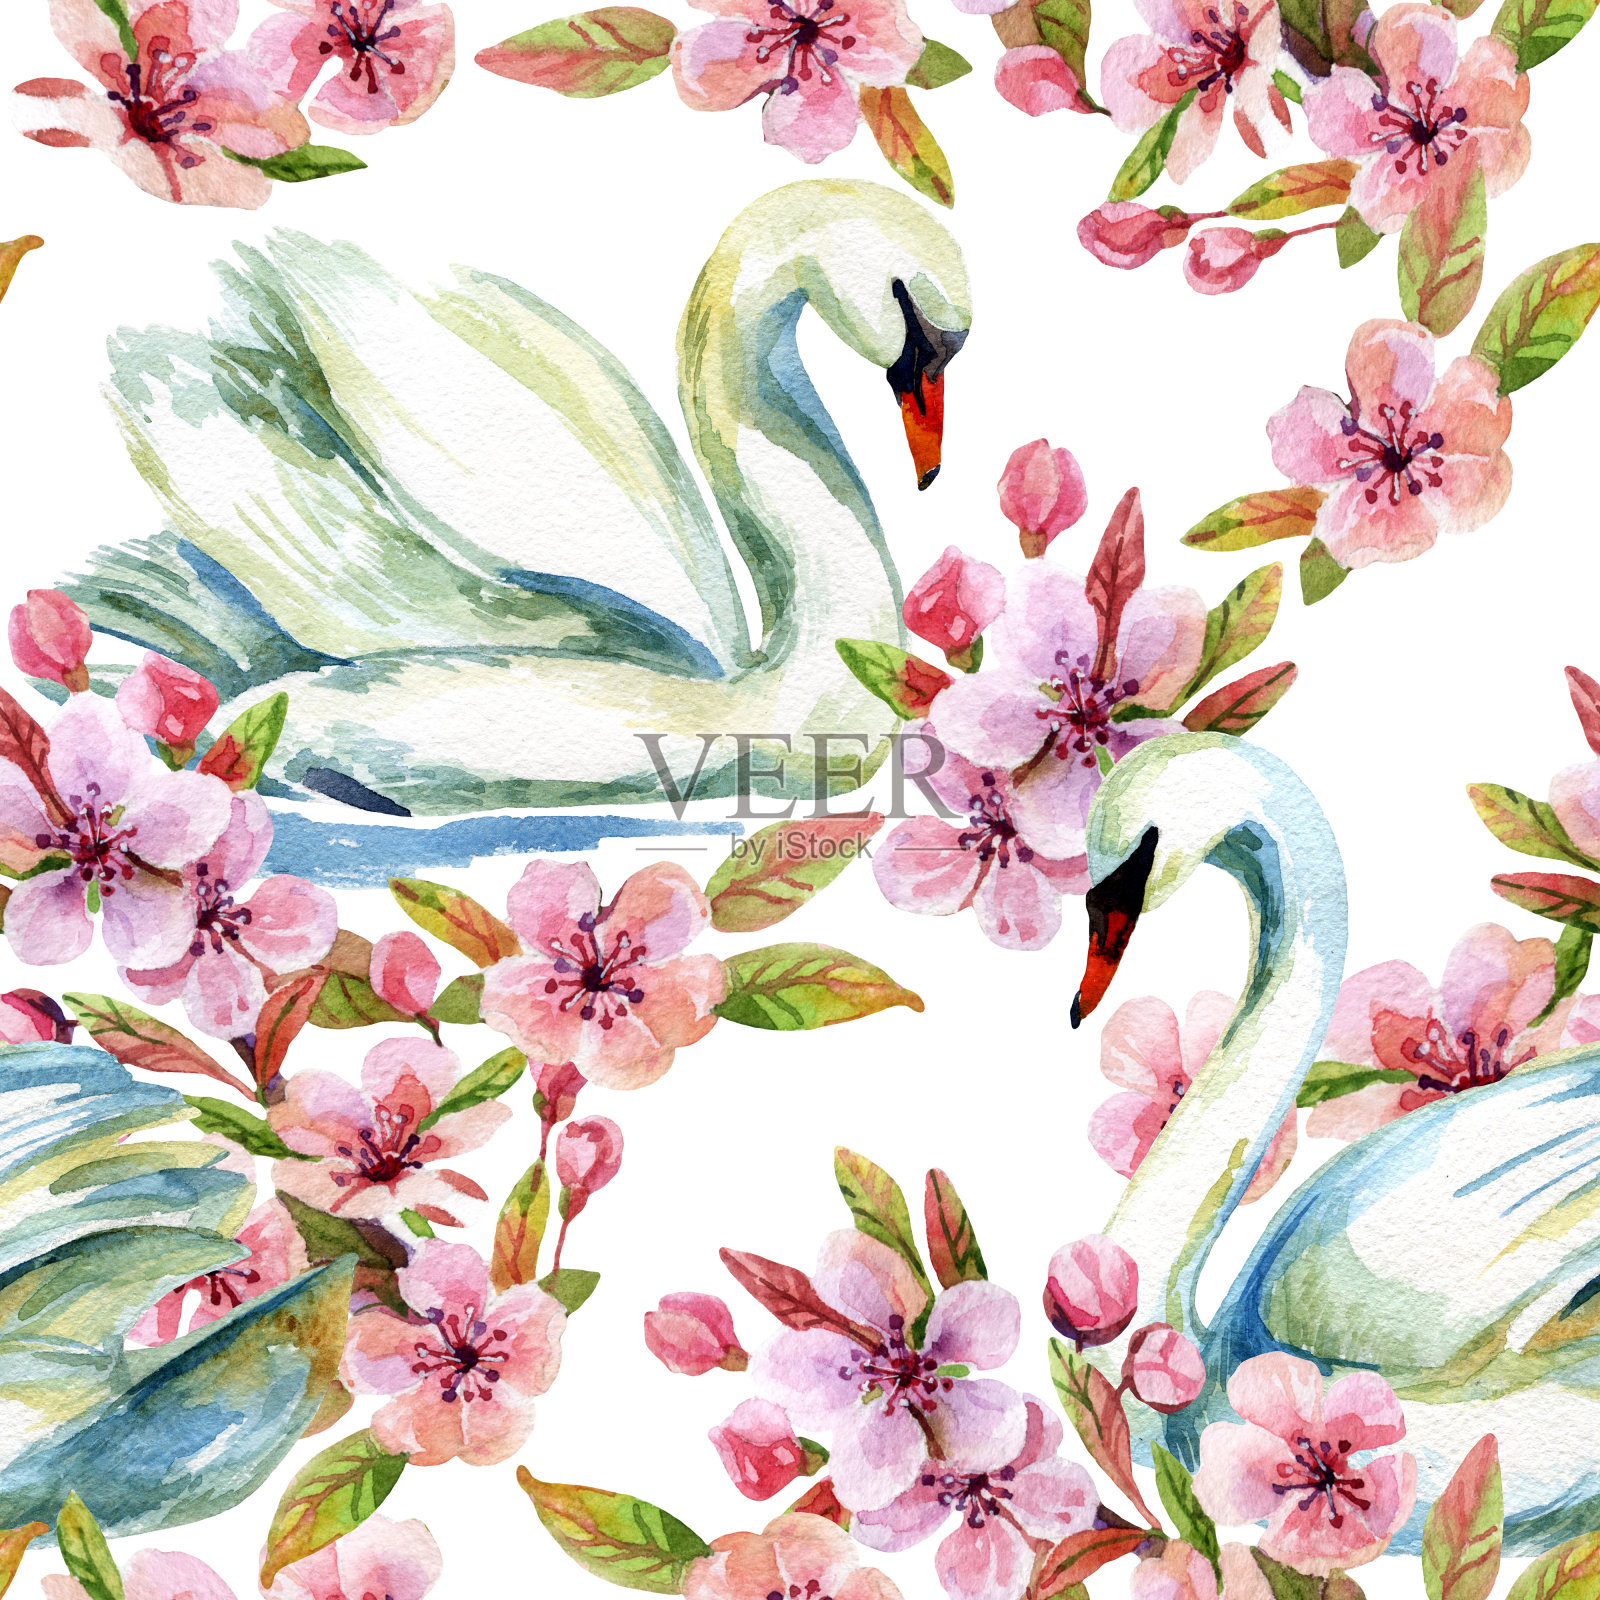 水彩画天鹅和樱花插画图片素材